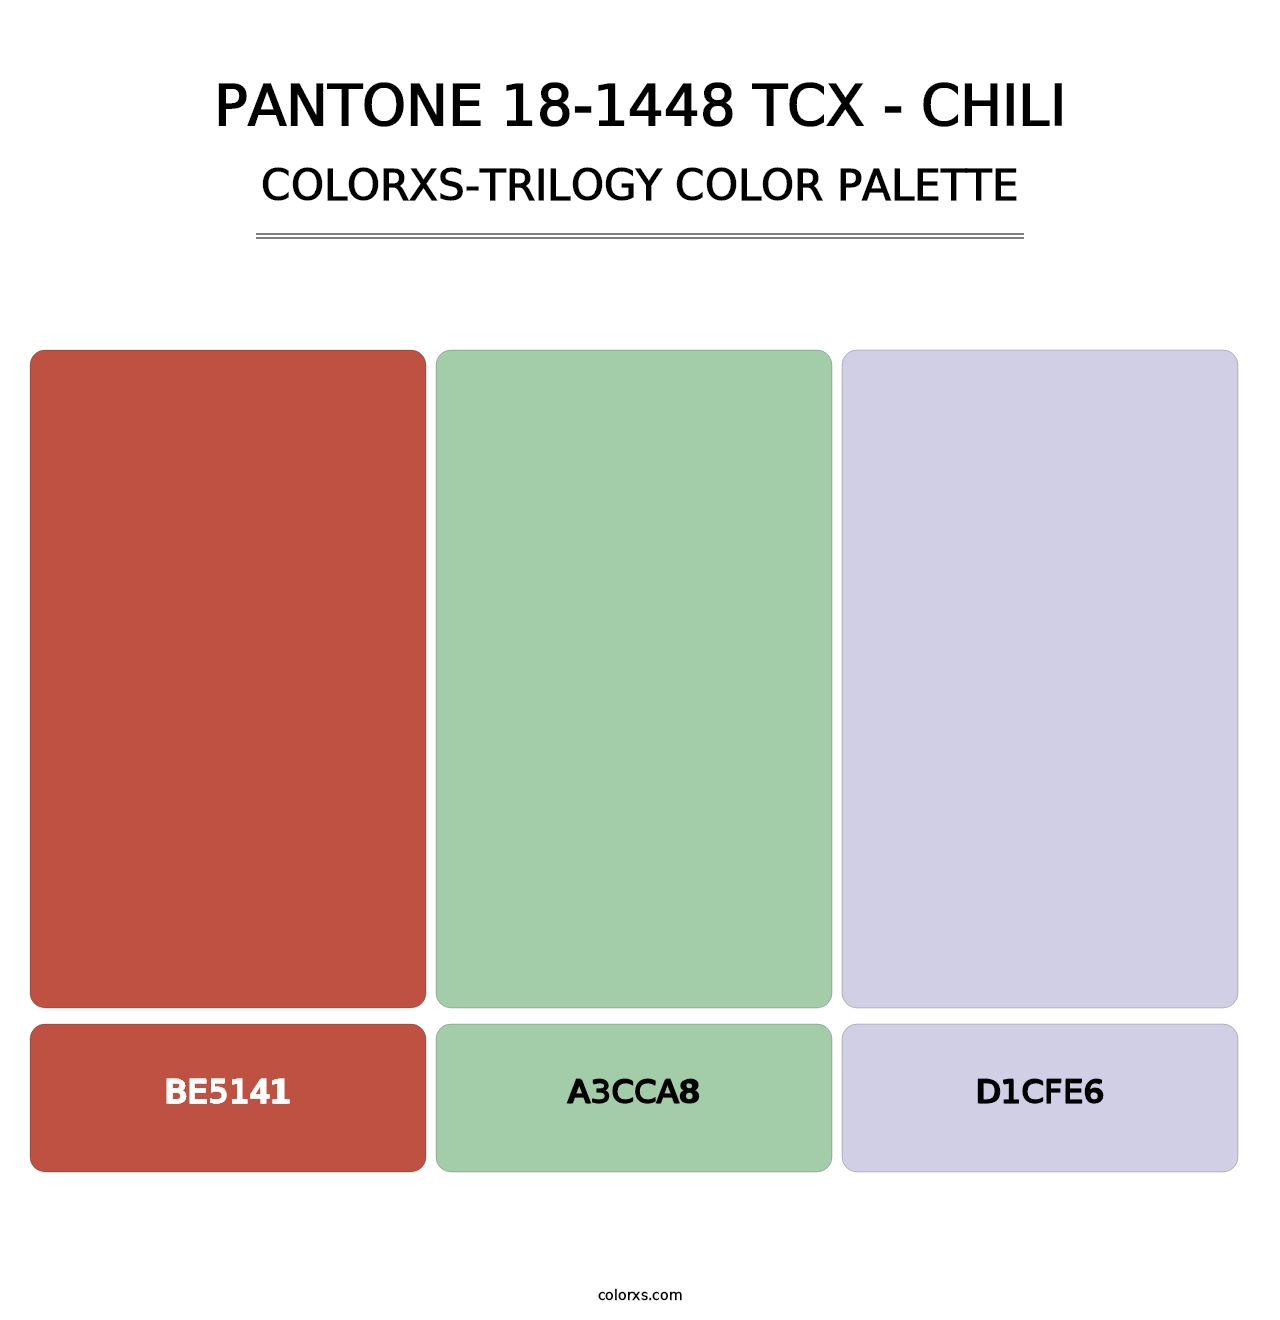 PANTONE 18-1448 TCX - Chili - Colorxs Trilogy Palette